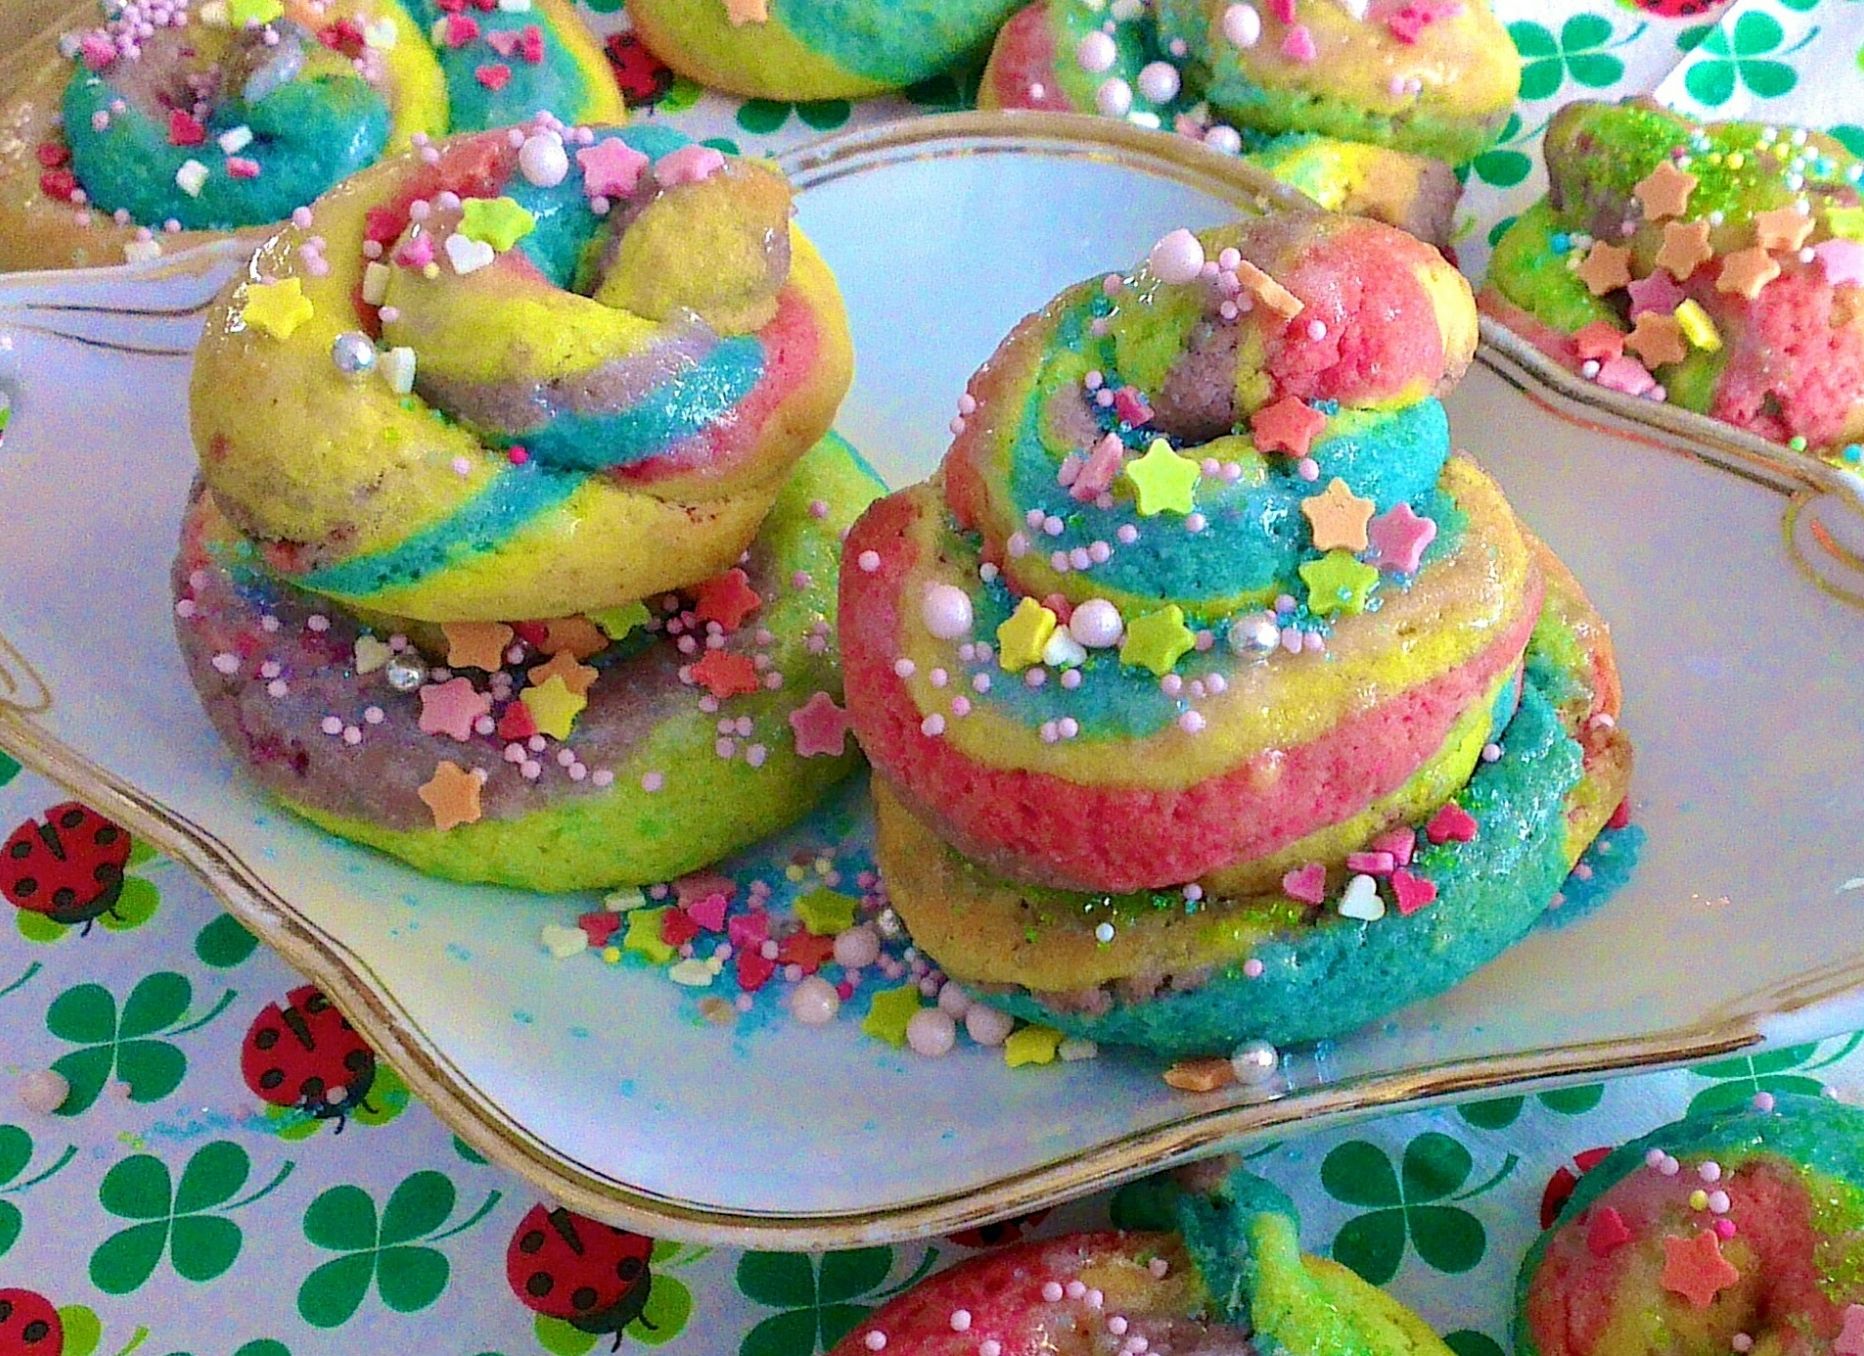 Rainbow pastries